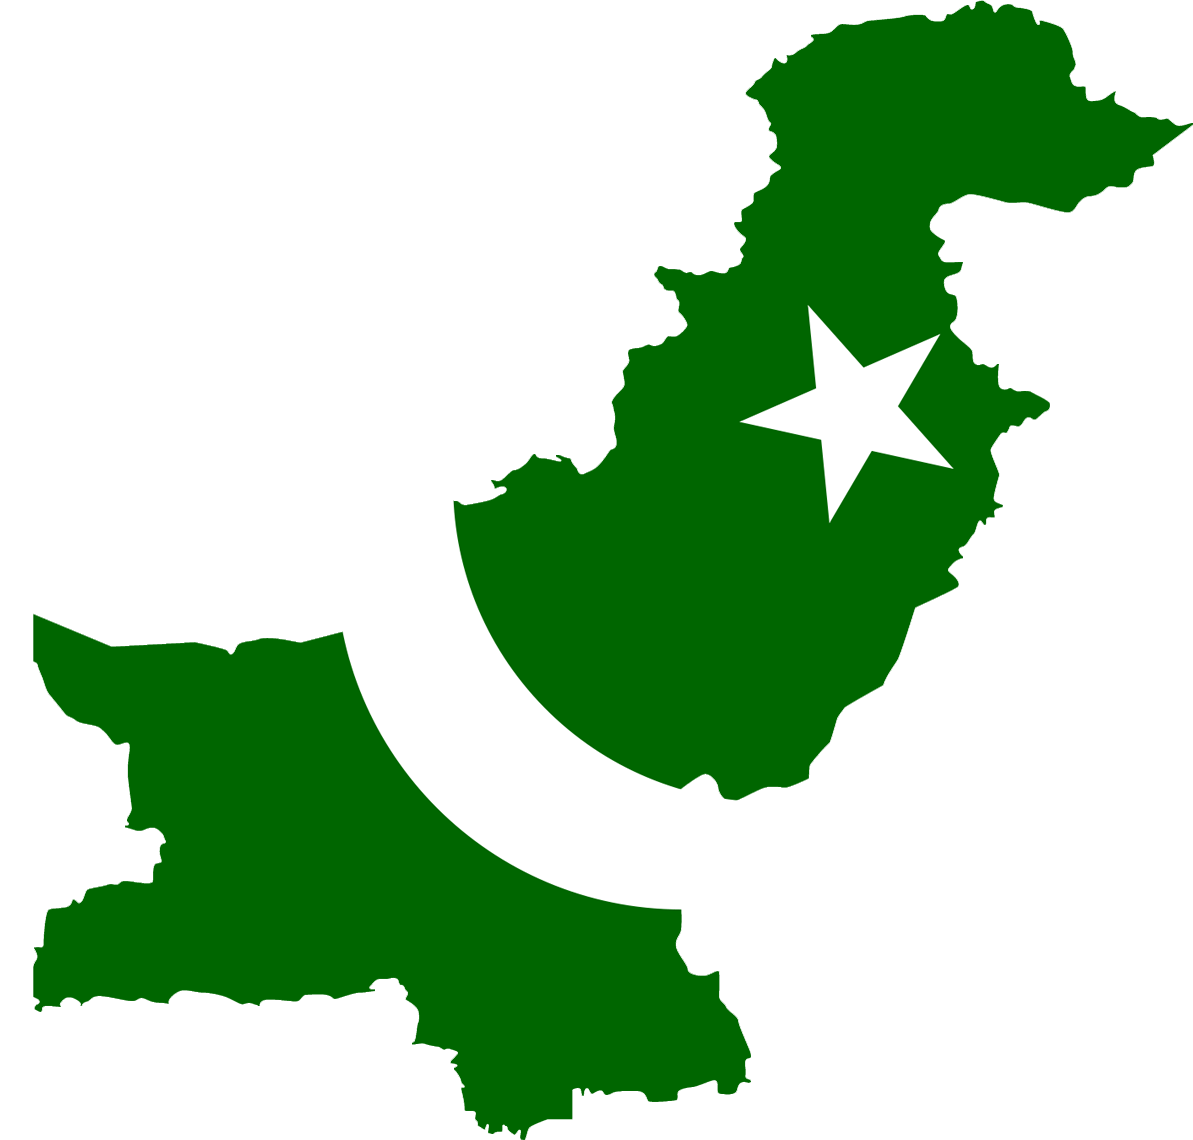 Pakistan_bayrak_harita.png